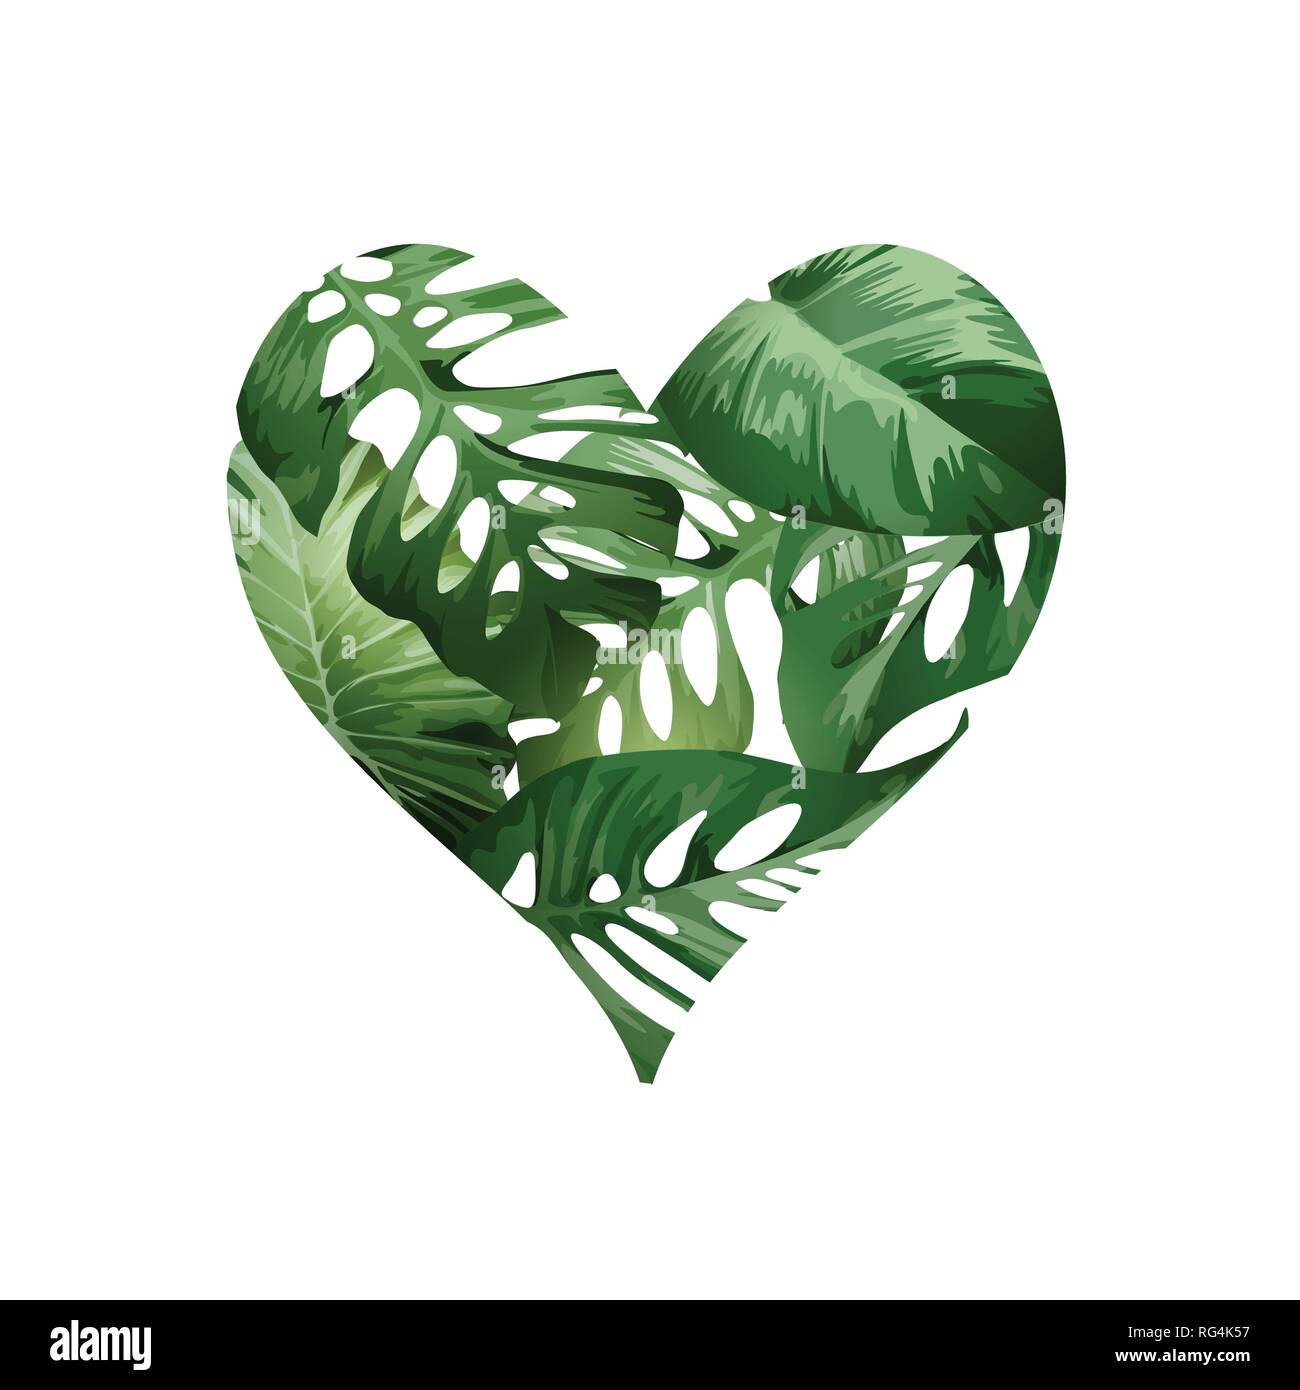 Ein grünes Herz Liebe Konzept aus tropischen grünen Palmen pflanze Blätter gemacht. Vector Illustration. Stock Vektor